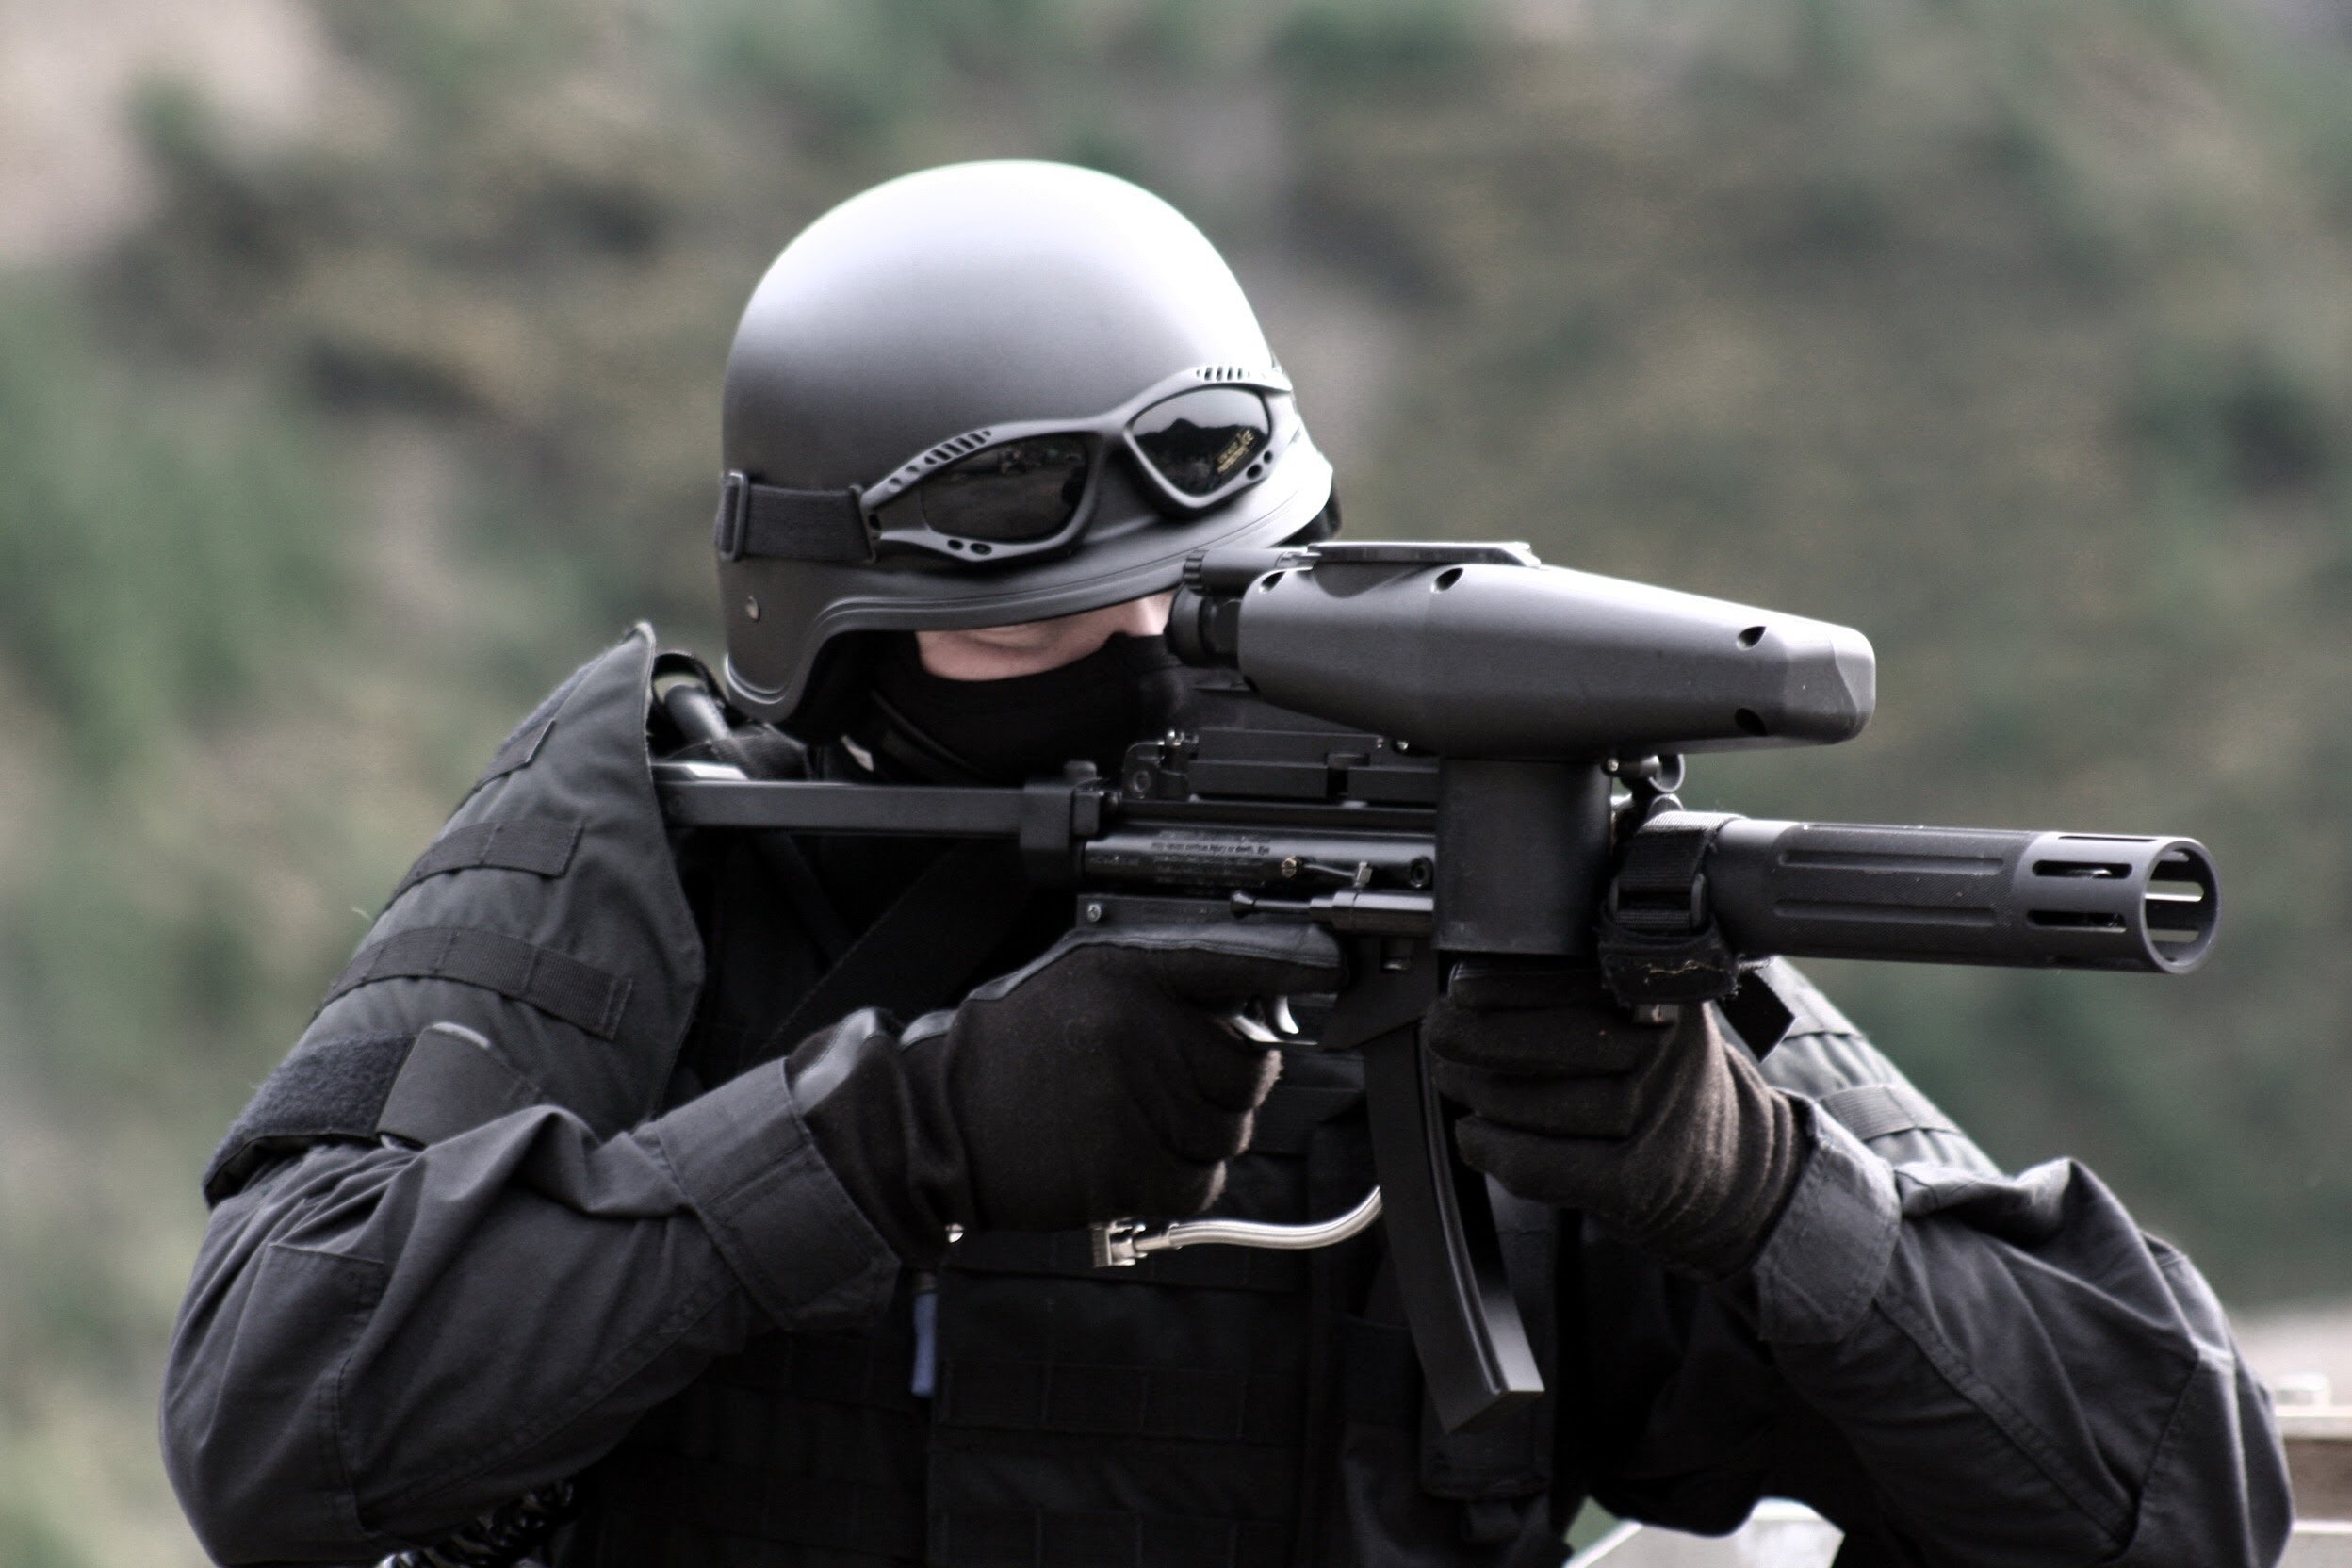 swat wallpaper,gewehr,persönliche schutzausrüstung,soldat,helm,klatsche